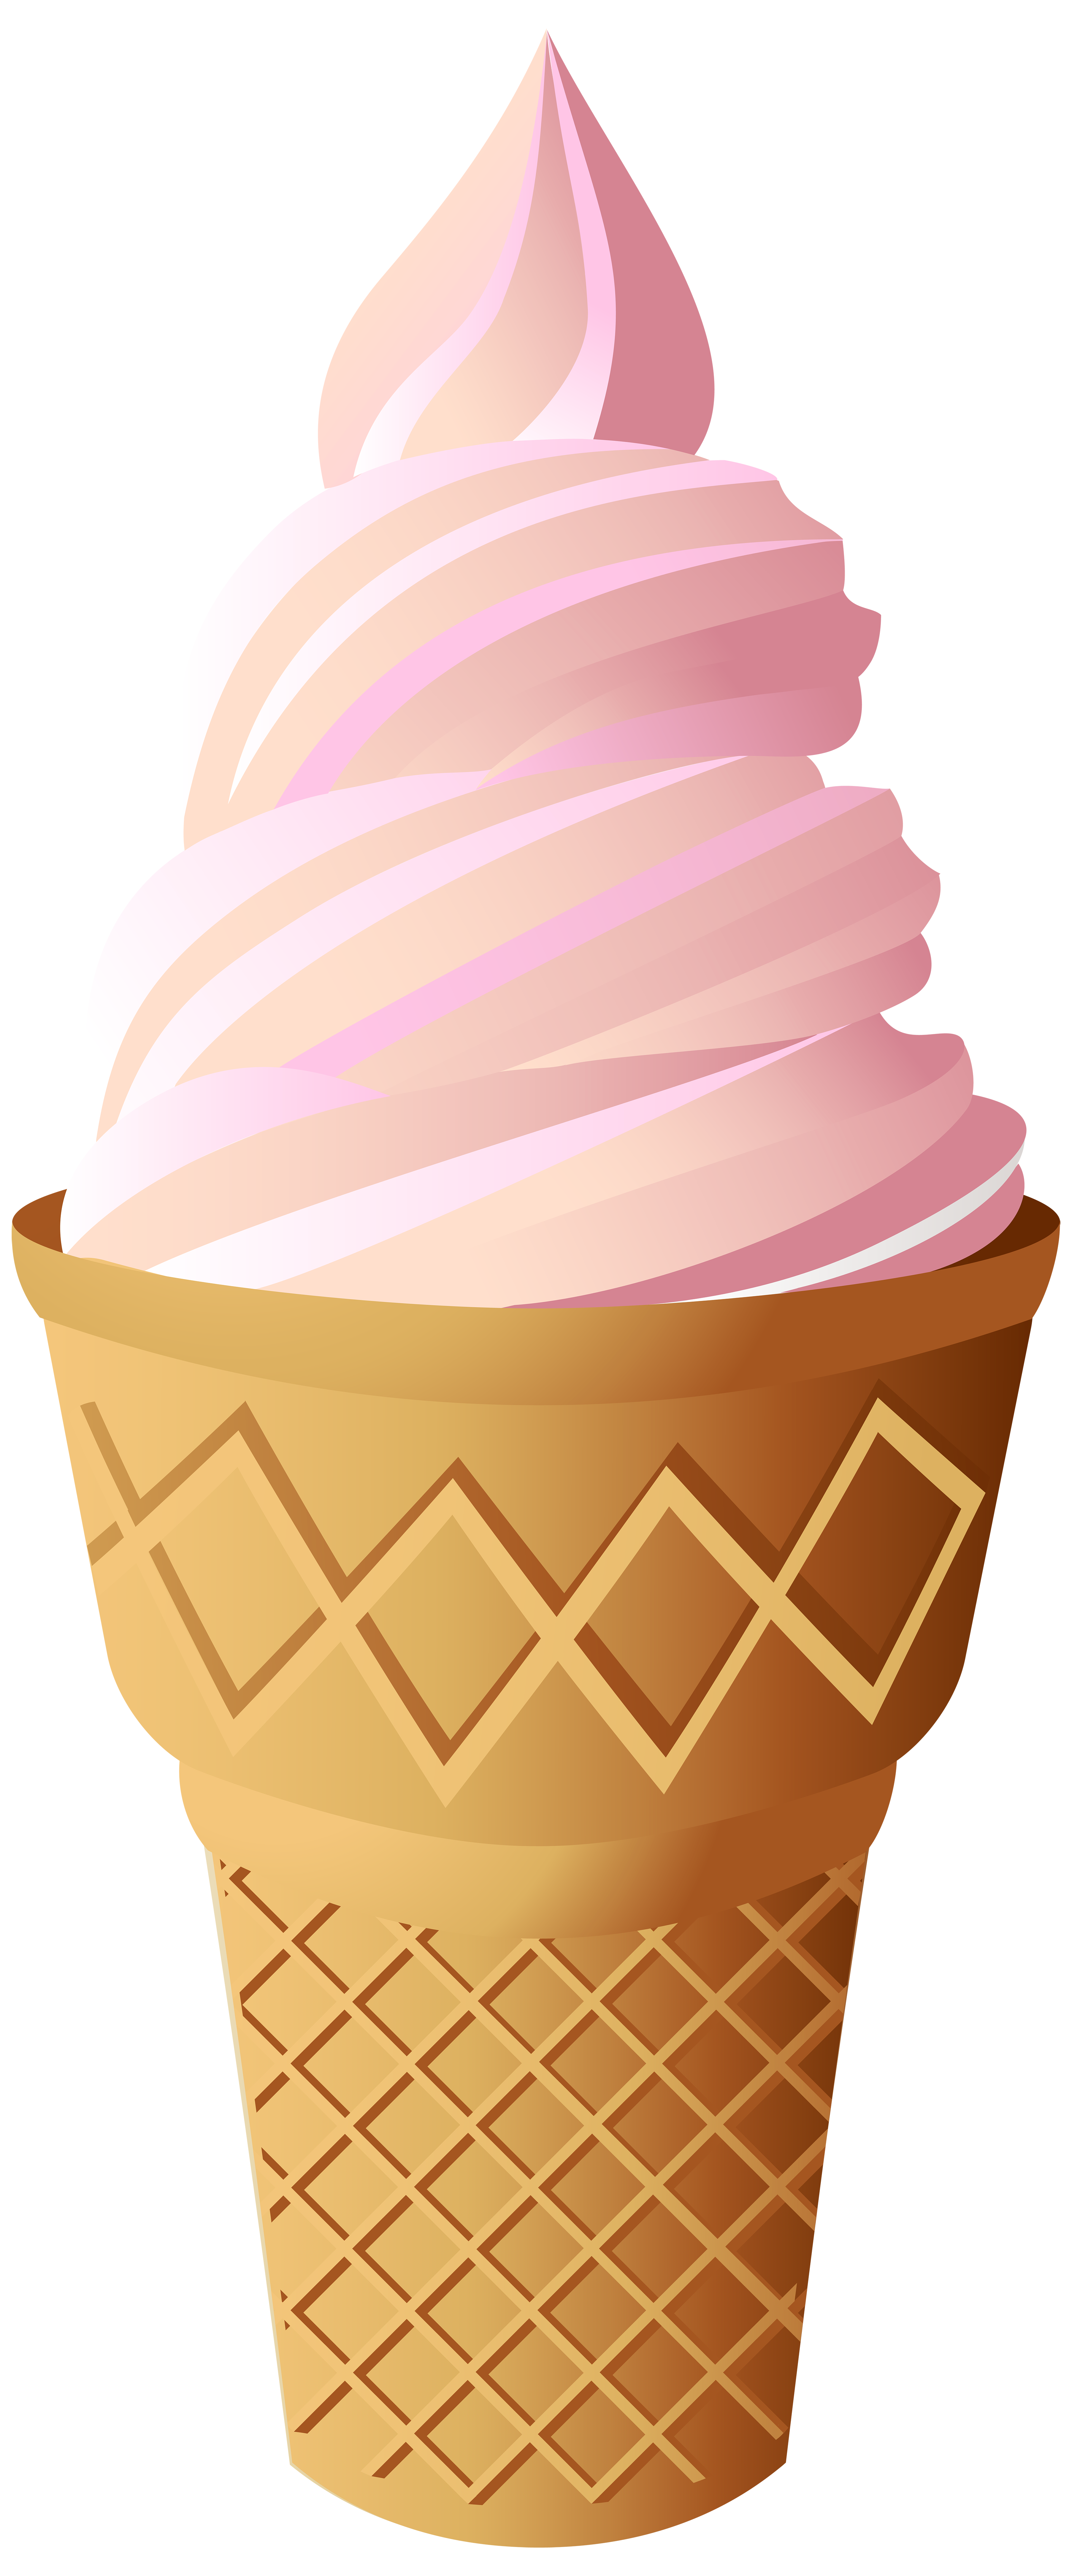 clipart ice cream cone - photo #50